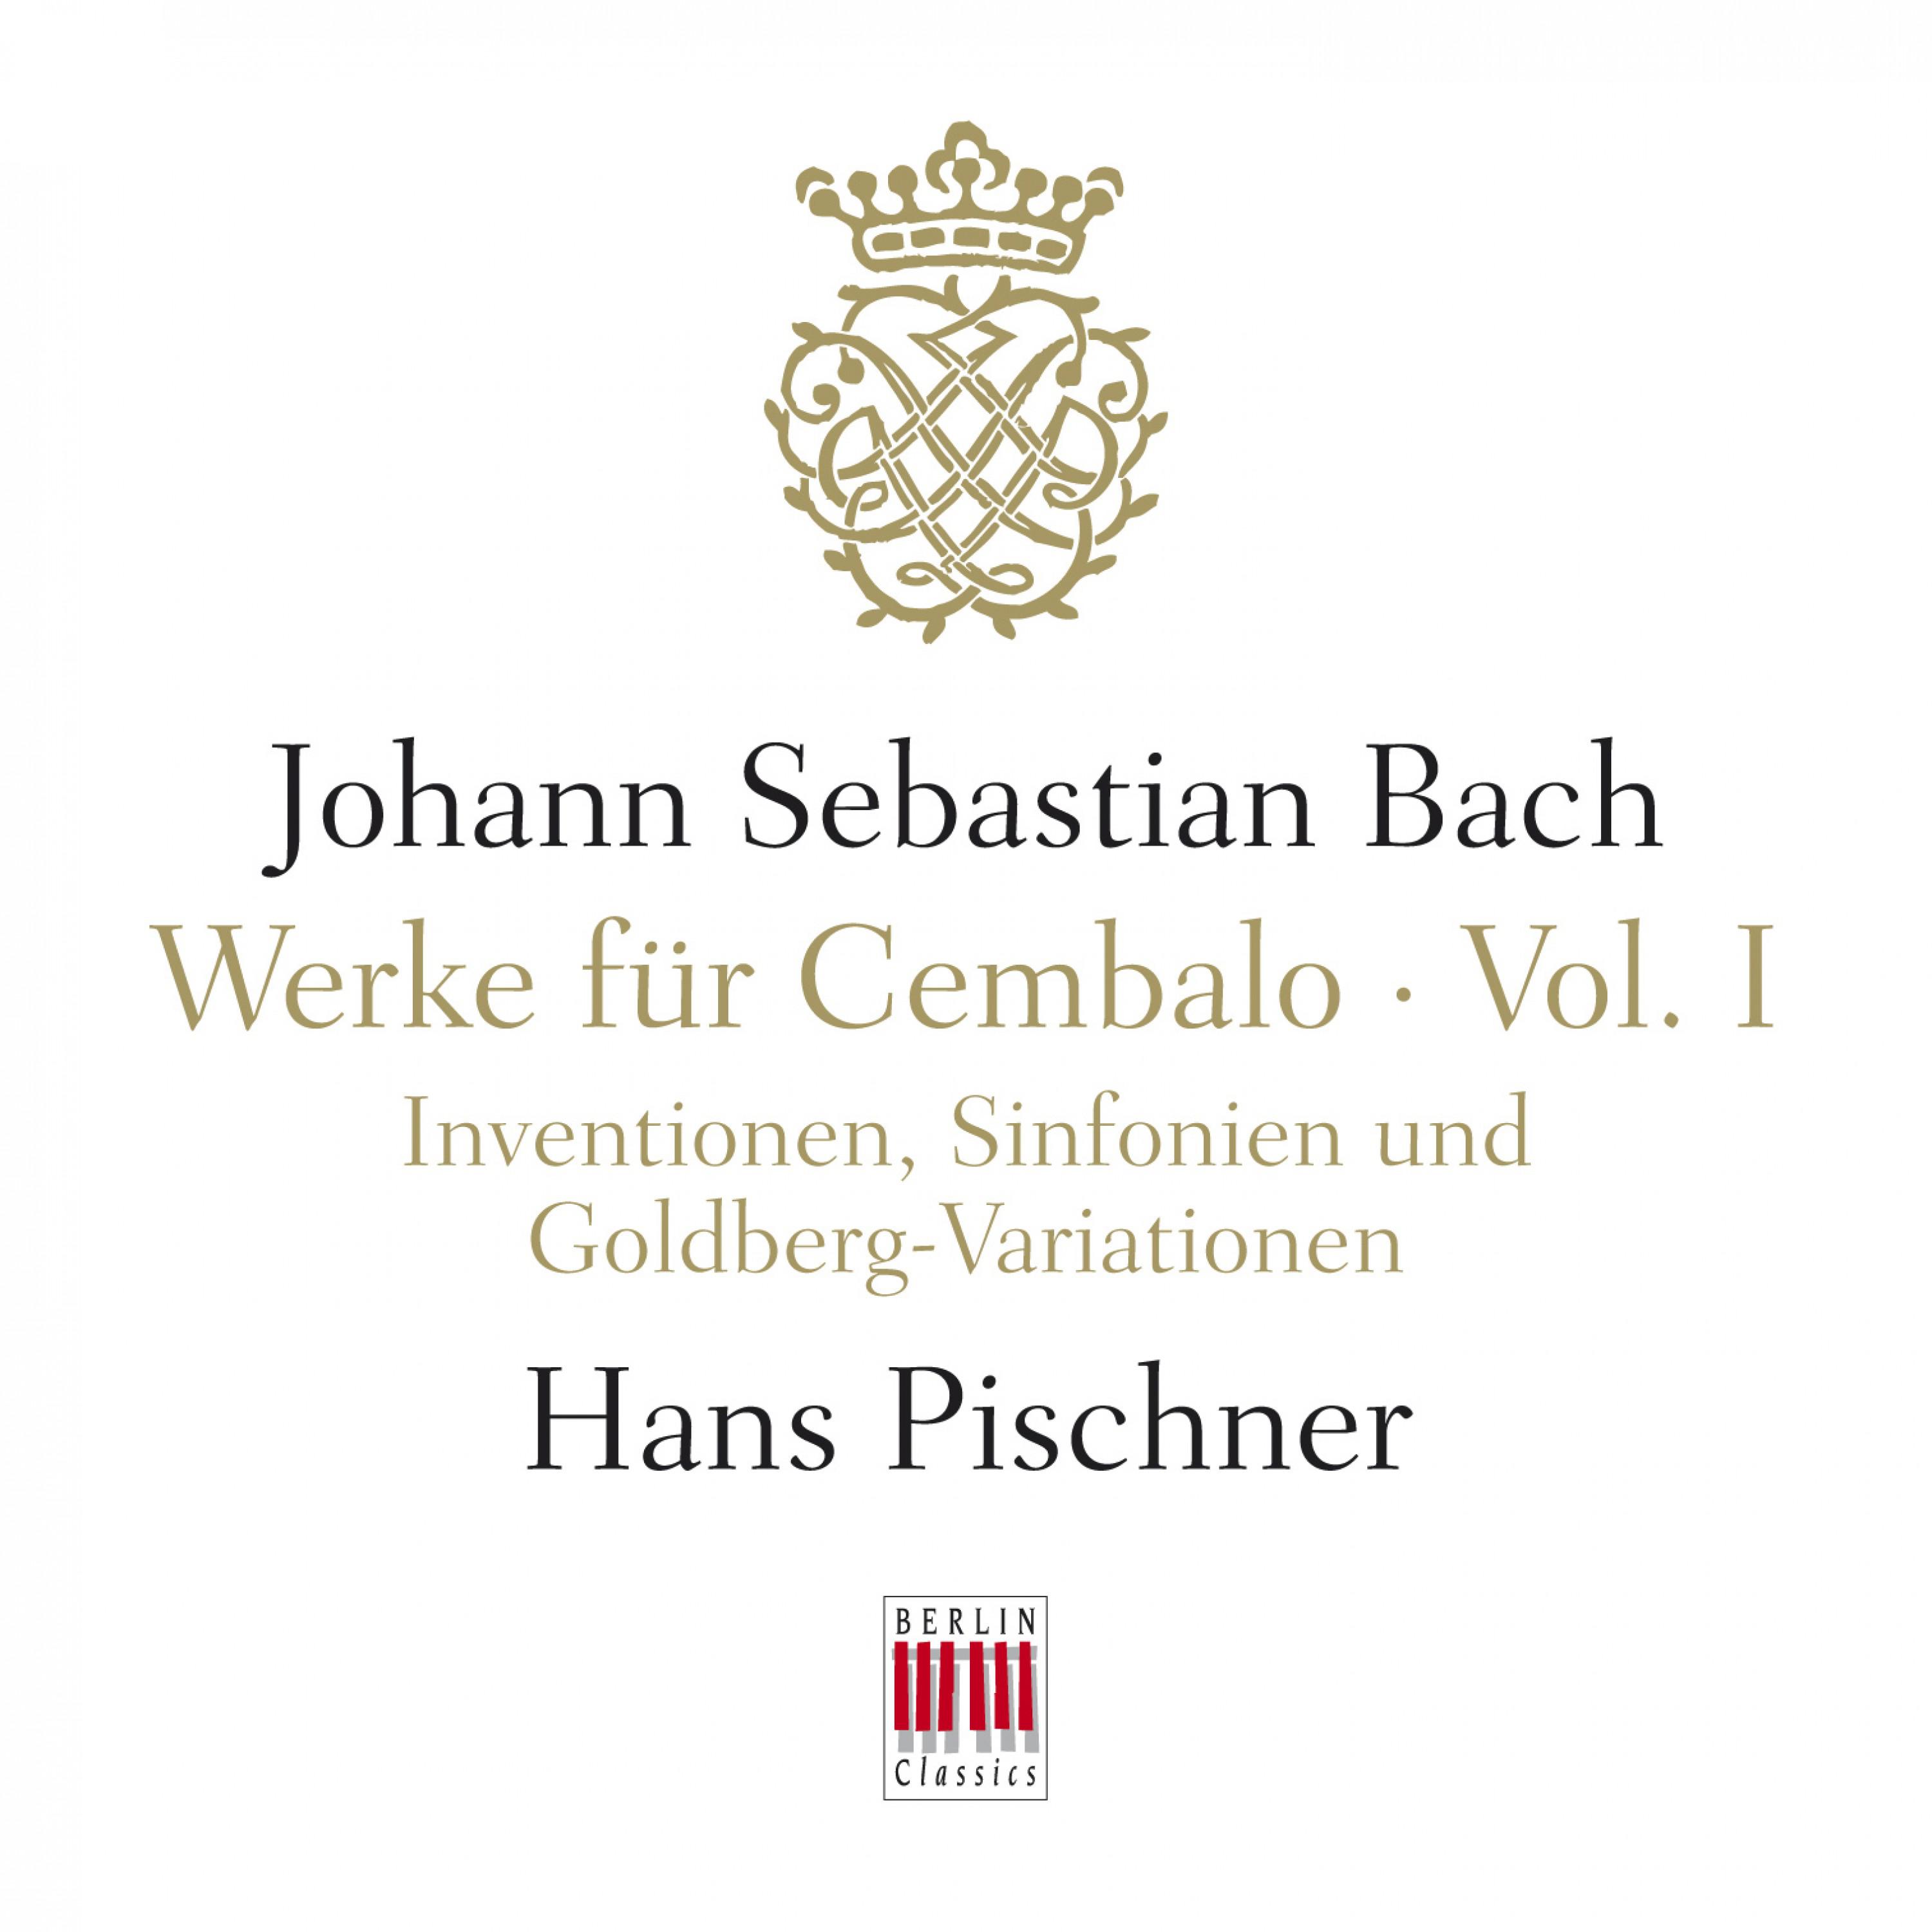 J. S. Bach: Werke für Cembalo, Vol. I - Inventionen, Sinfonien und Goldberg-Variationen